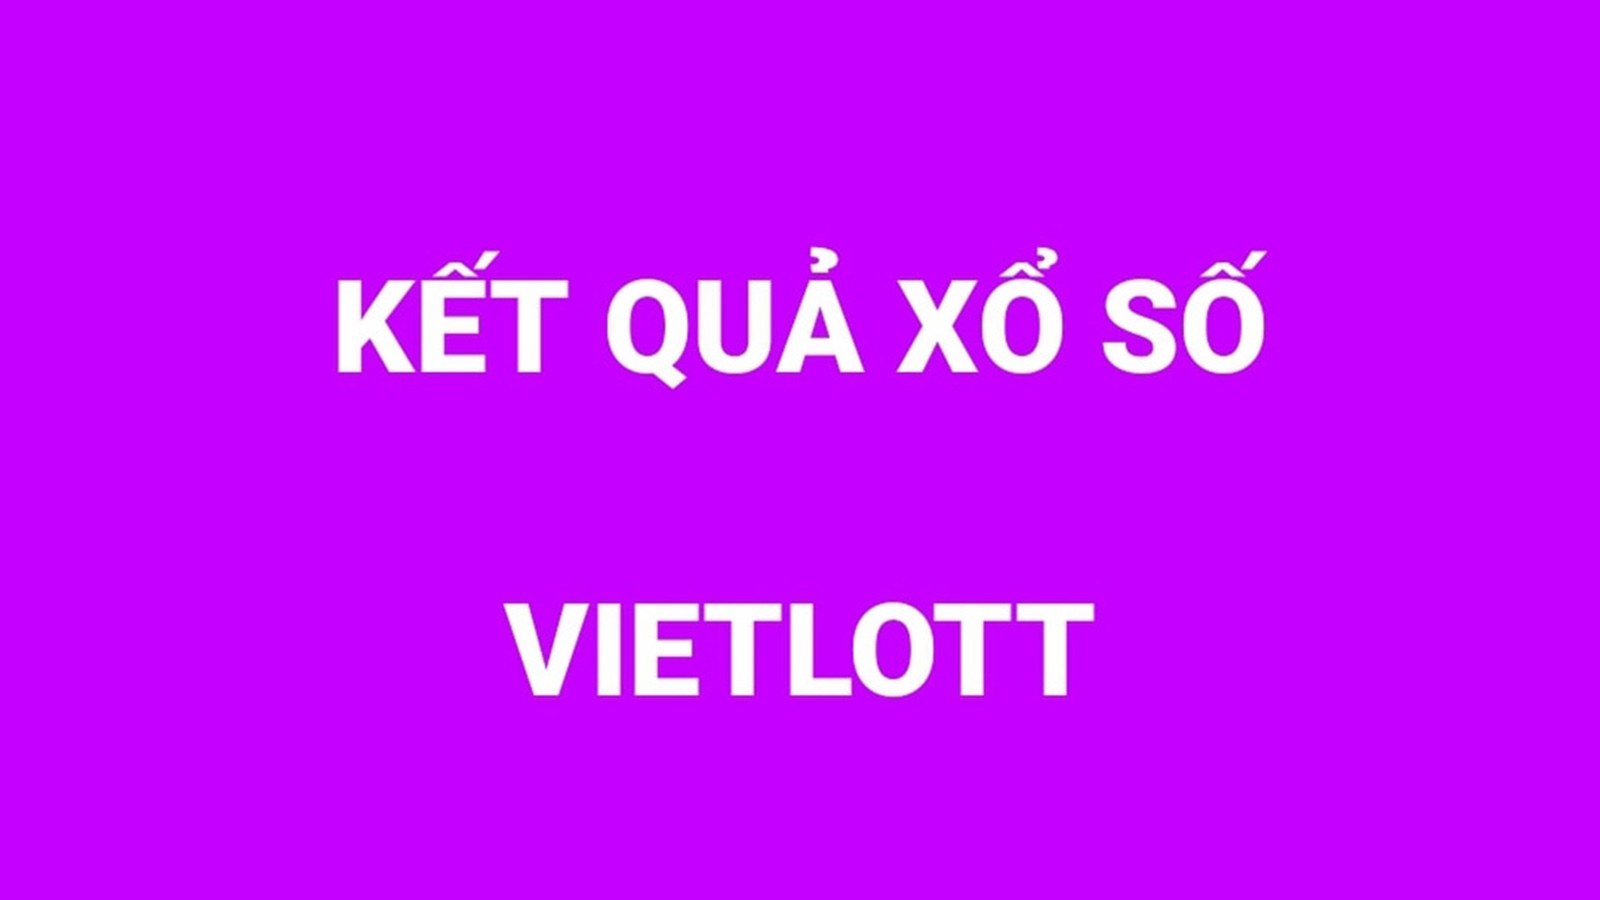 Vietlott 6/55. Xổ số Vietlott hôm nay 12/9/2020. Kết quả Vietlott Power 6/55. Kết quả Vietlott 6 55. Ket qua xo so Vietlott 6 55 hom nay. KQXS Vietlott.